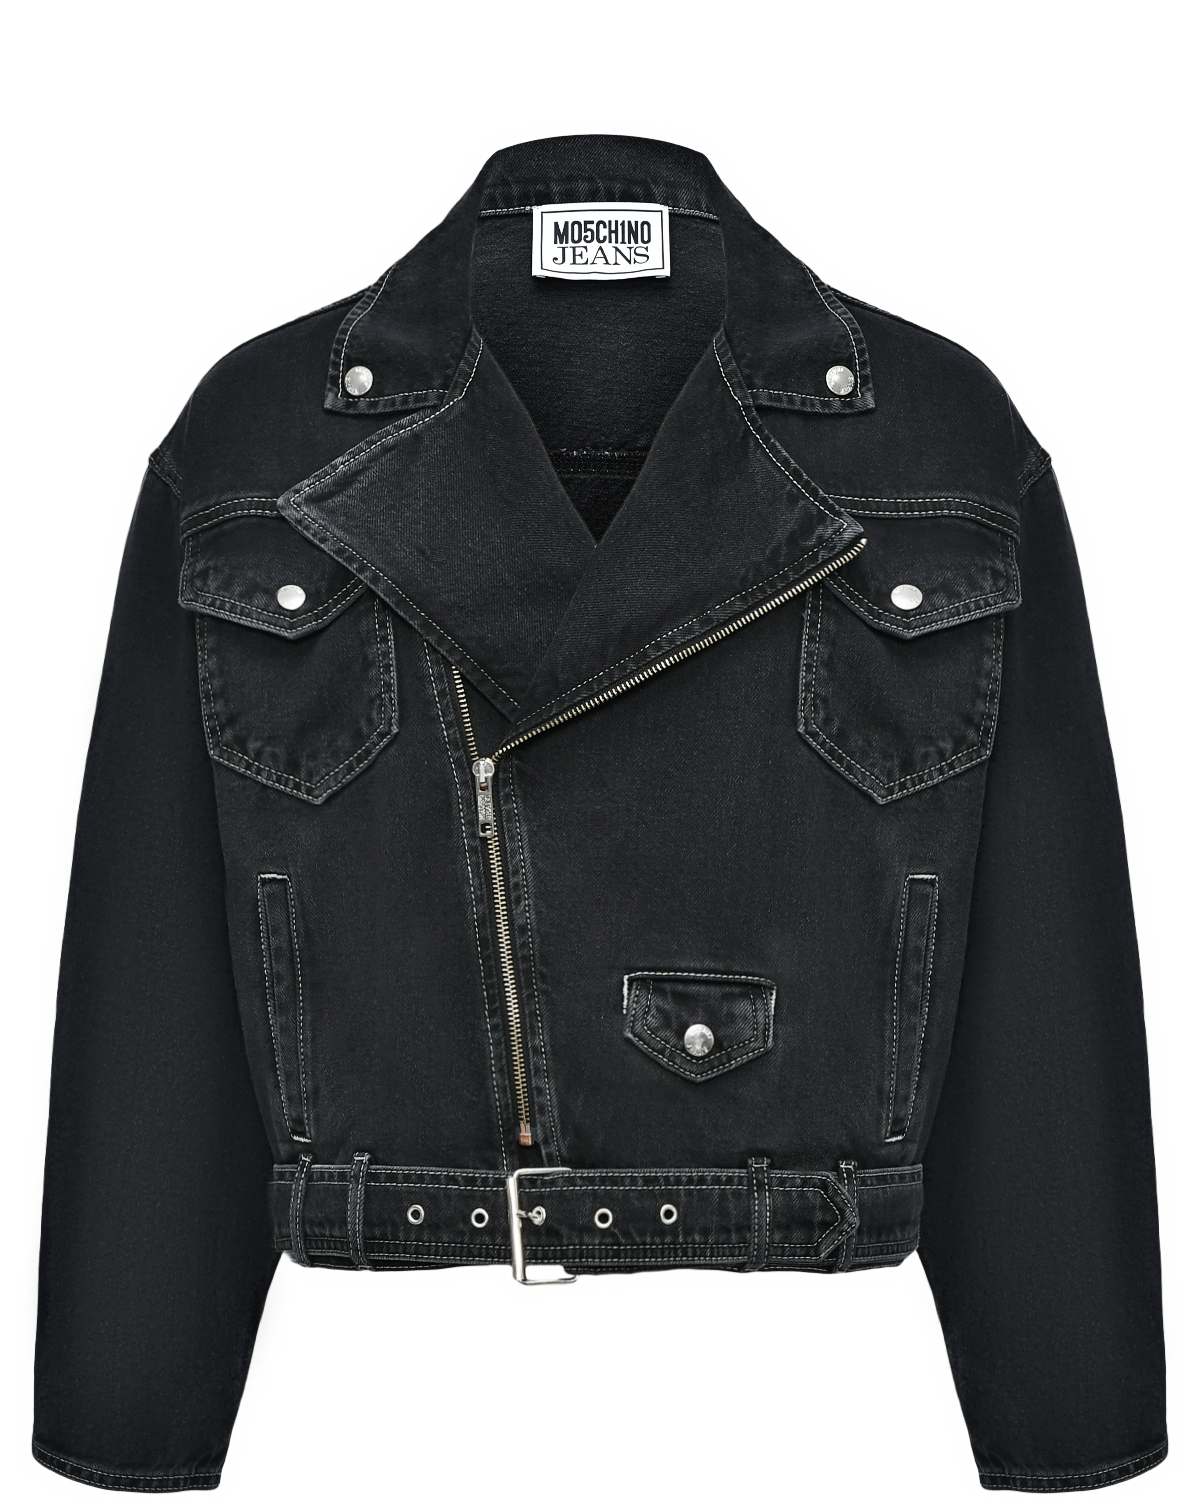 Джинсовая куртка-косуха, черная Mo5ch1no Jeans, размер 42, цвет черный